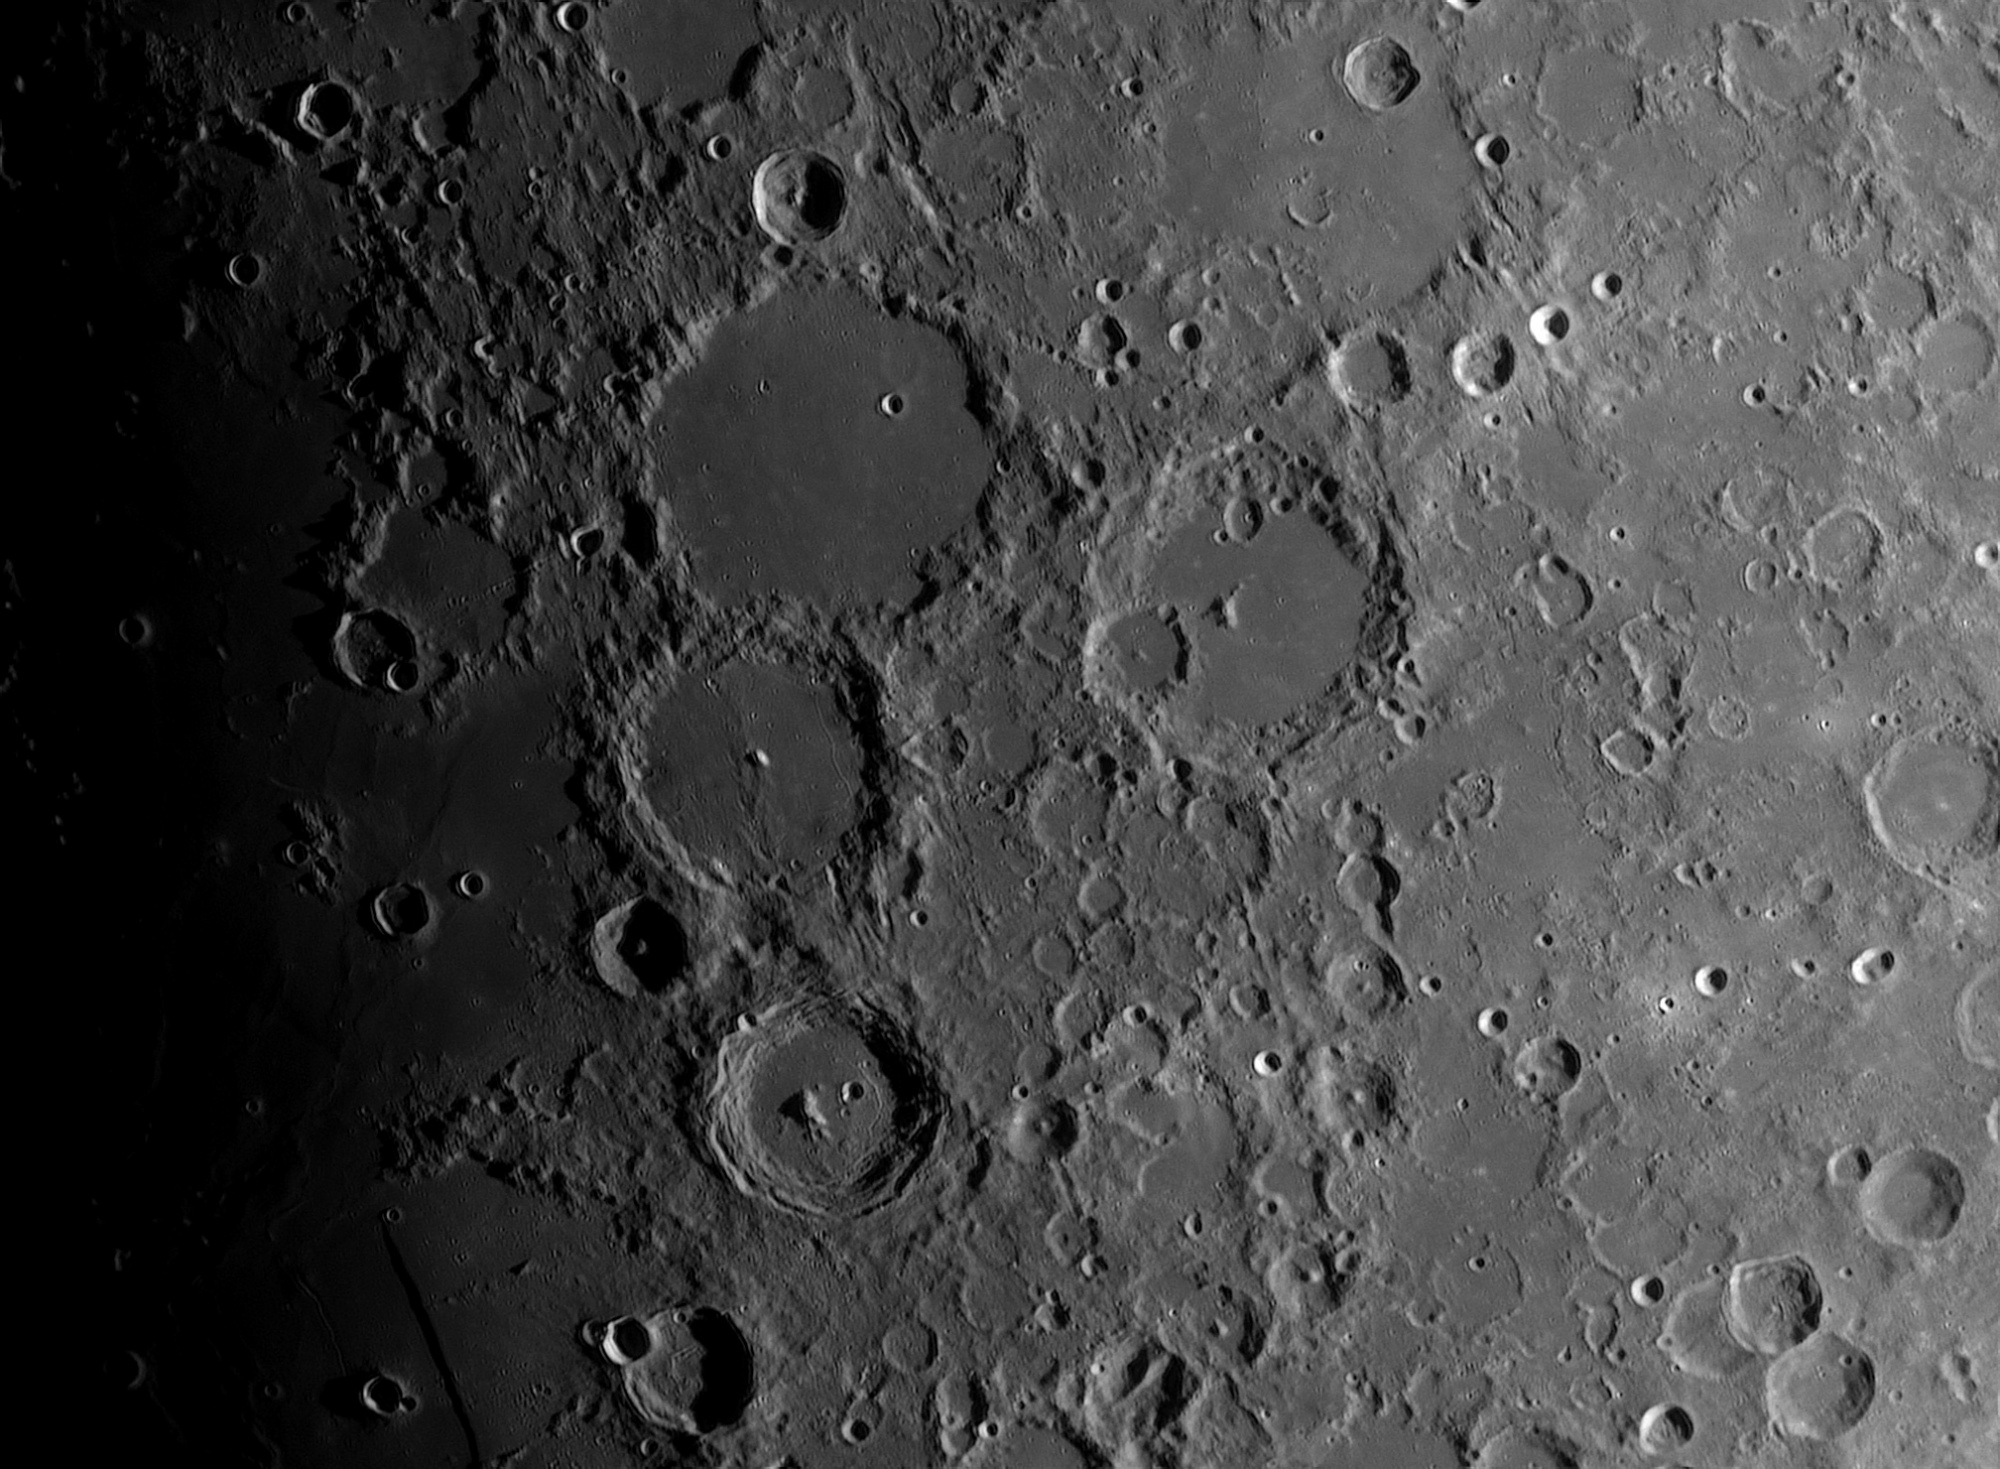 Lune-20240516_PAA-ba04-AS.thumb.jpg.c0d86131430c5d15bea6e2e97d733a21.jpg